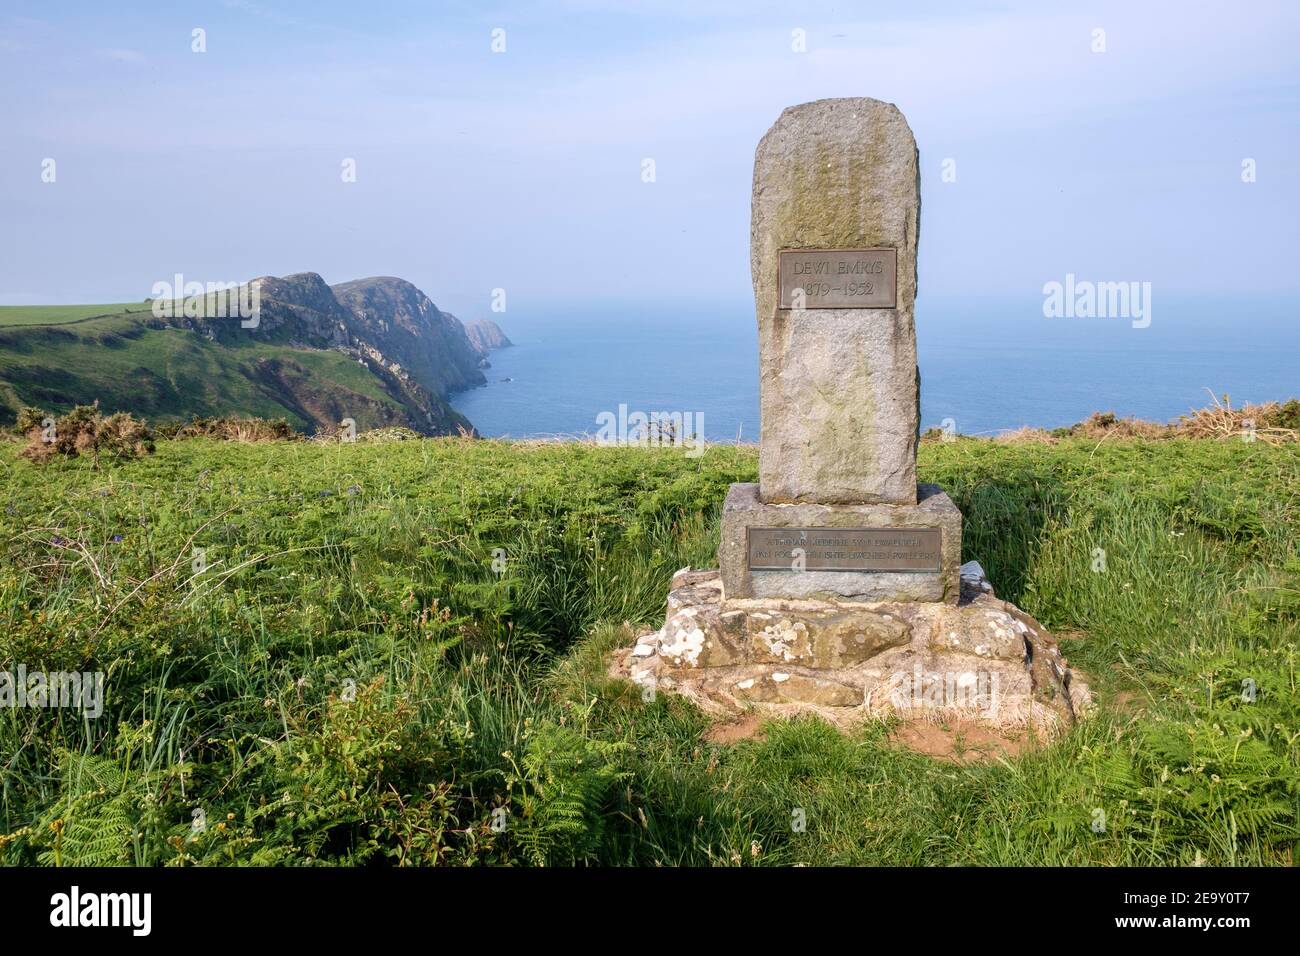 Dewi Emrys Memorial on the Pembrokeshire Coastal Path, Pembrokeshire, pays de Galles, GB, Royaume-Uni Banque D'Images